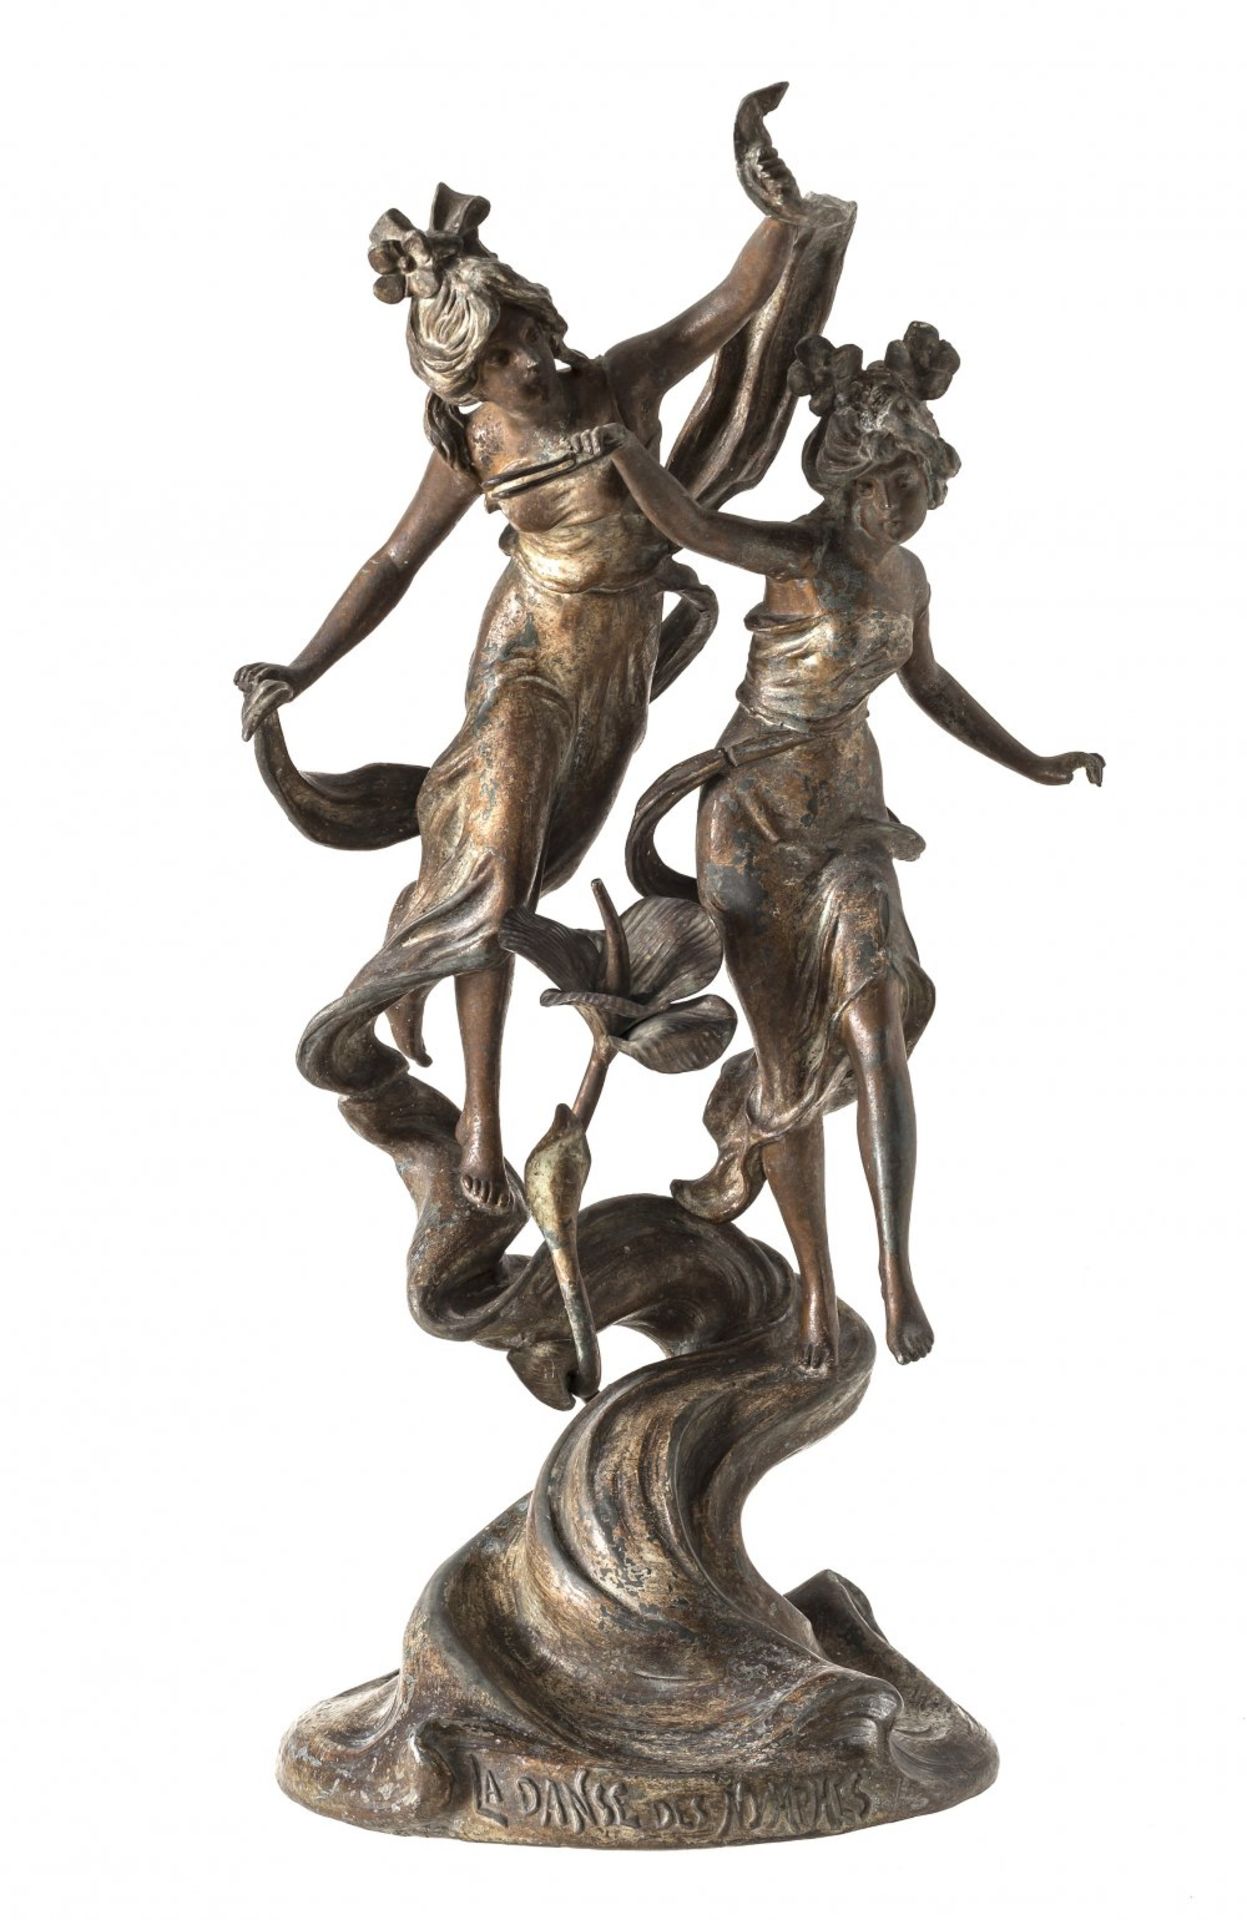 FigurengruppeIm Stil um 1900. "La Danse des Nymphes". Metallguss, bronziert, patiniert. H. 45 cm.